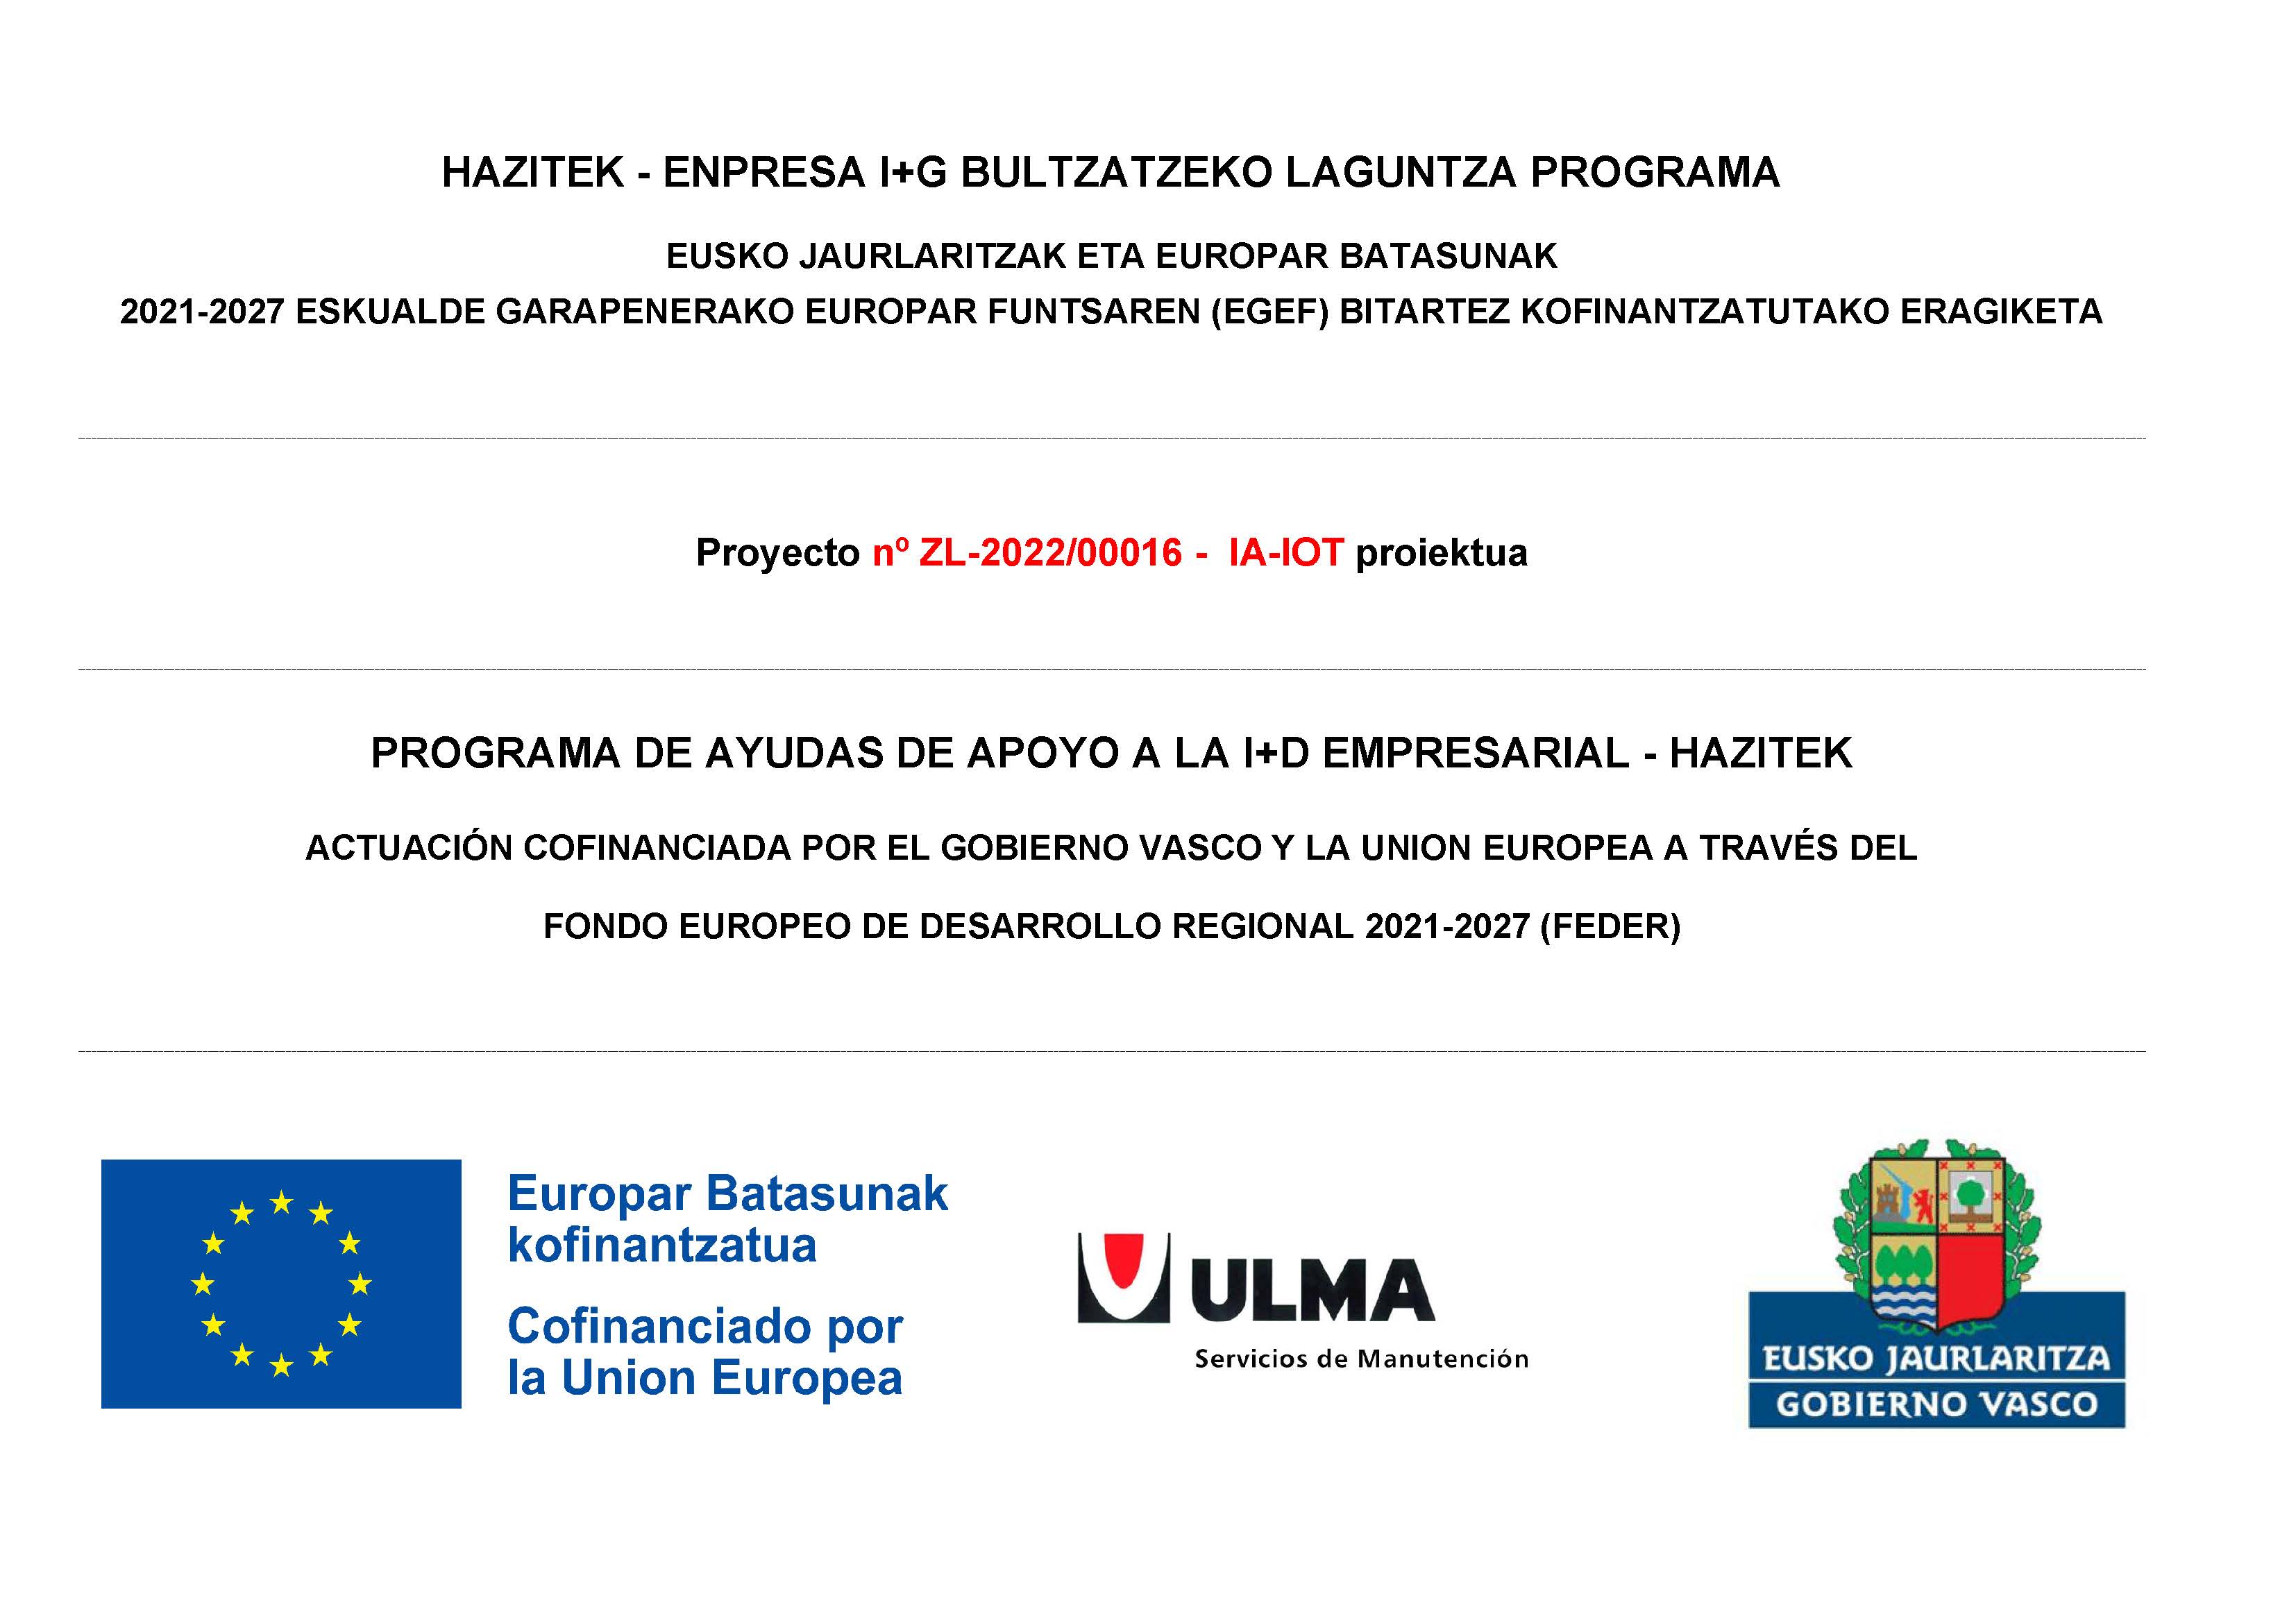 PROGRAMA DE AYUDAS DE APOYO A LA I+D EMPRESARIAL – HAZITEK – Proyecto nº ZL-2022/0016 – IA-IOT proiektua